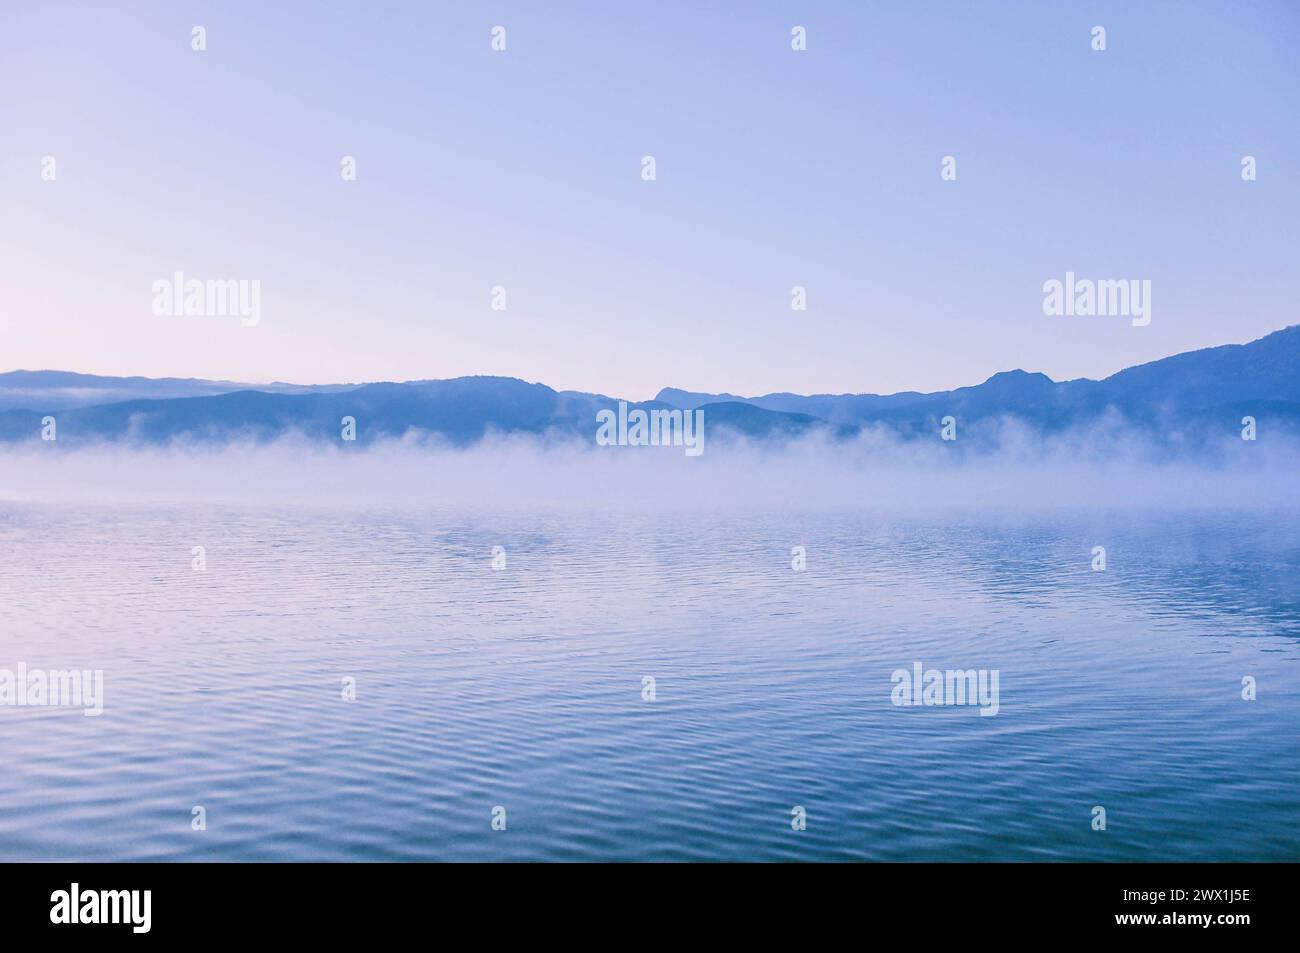 Paysage pittoresque du lac Lugu dans un épais brouillard blanc au lever du soleil. Silhouettes de montagnes. Saison d'automne. Nature, écologie, conservation de l'environnement Banque D'Images